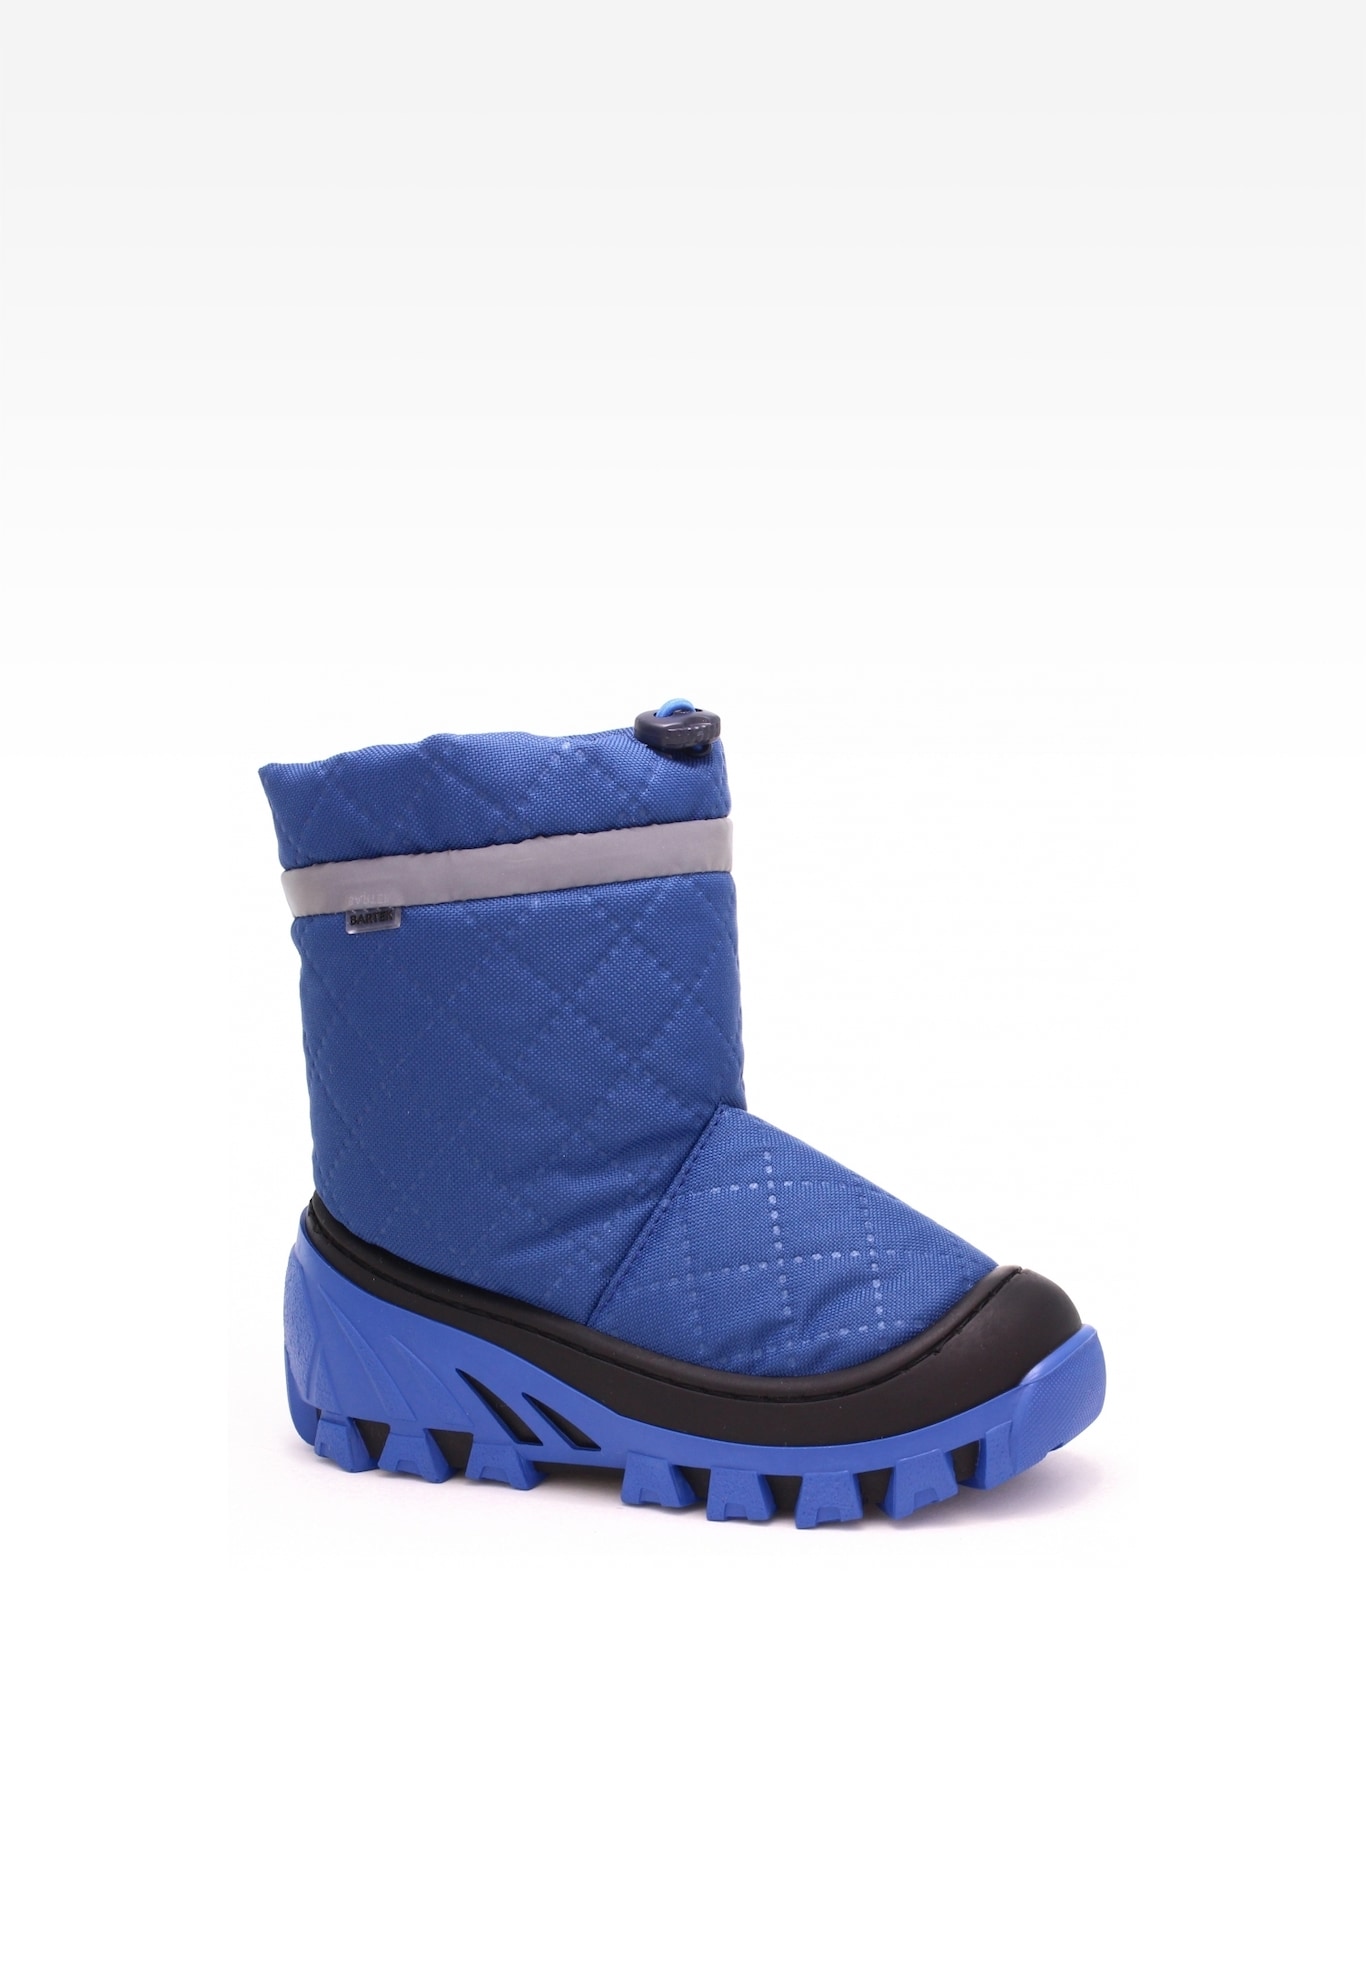 Śniegowce BARTEK 1486-39FW, dla chłopców, niebieski